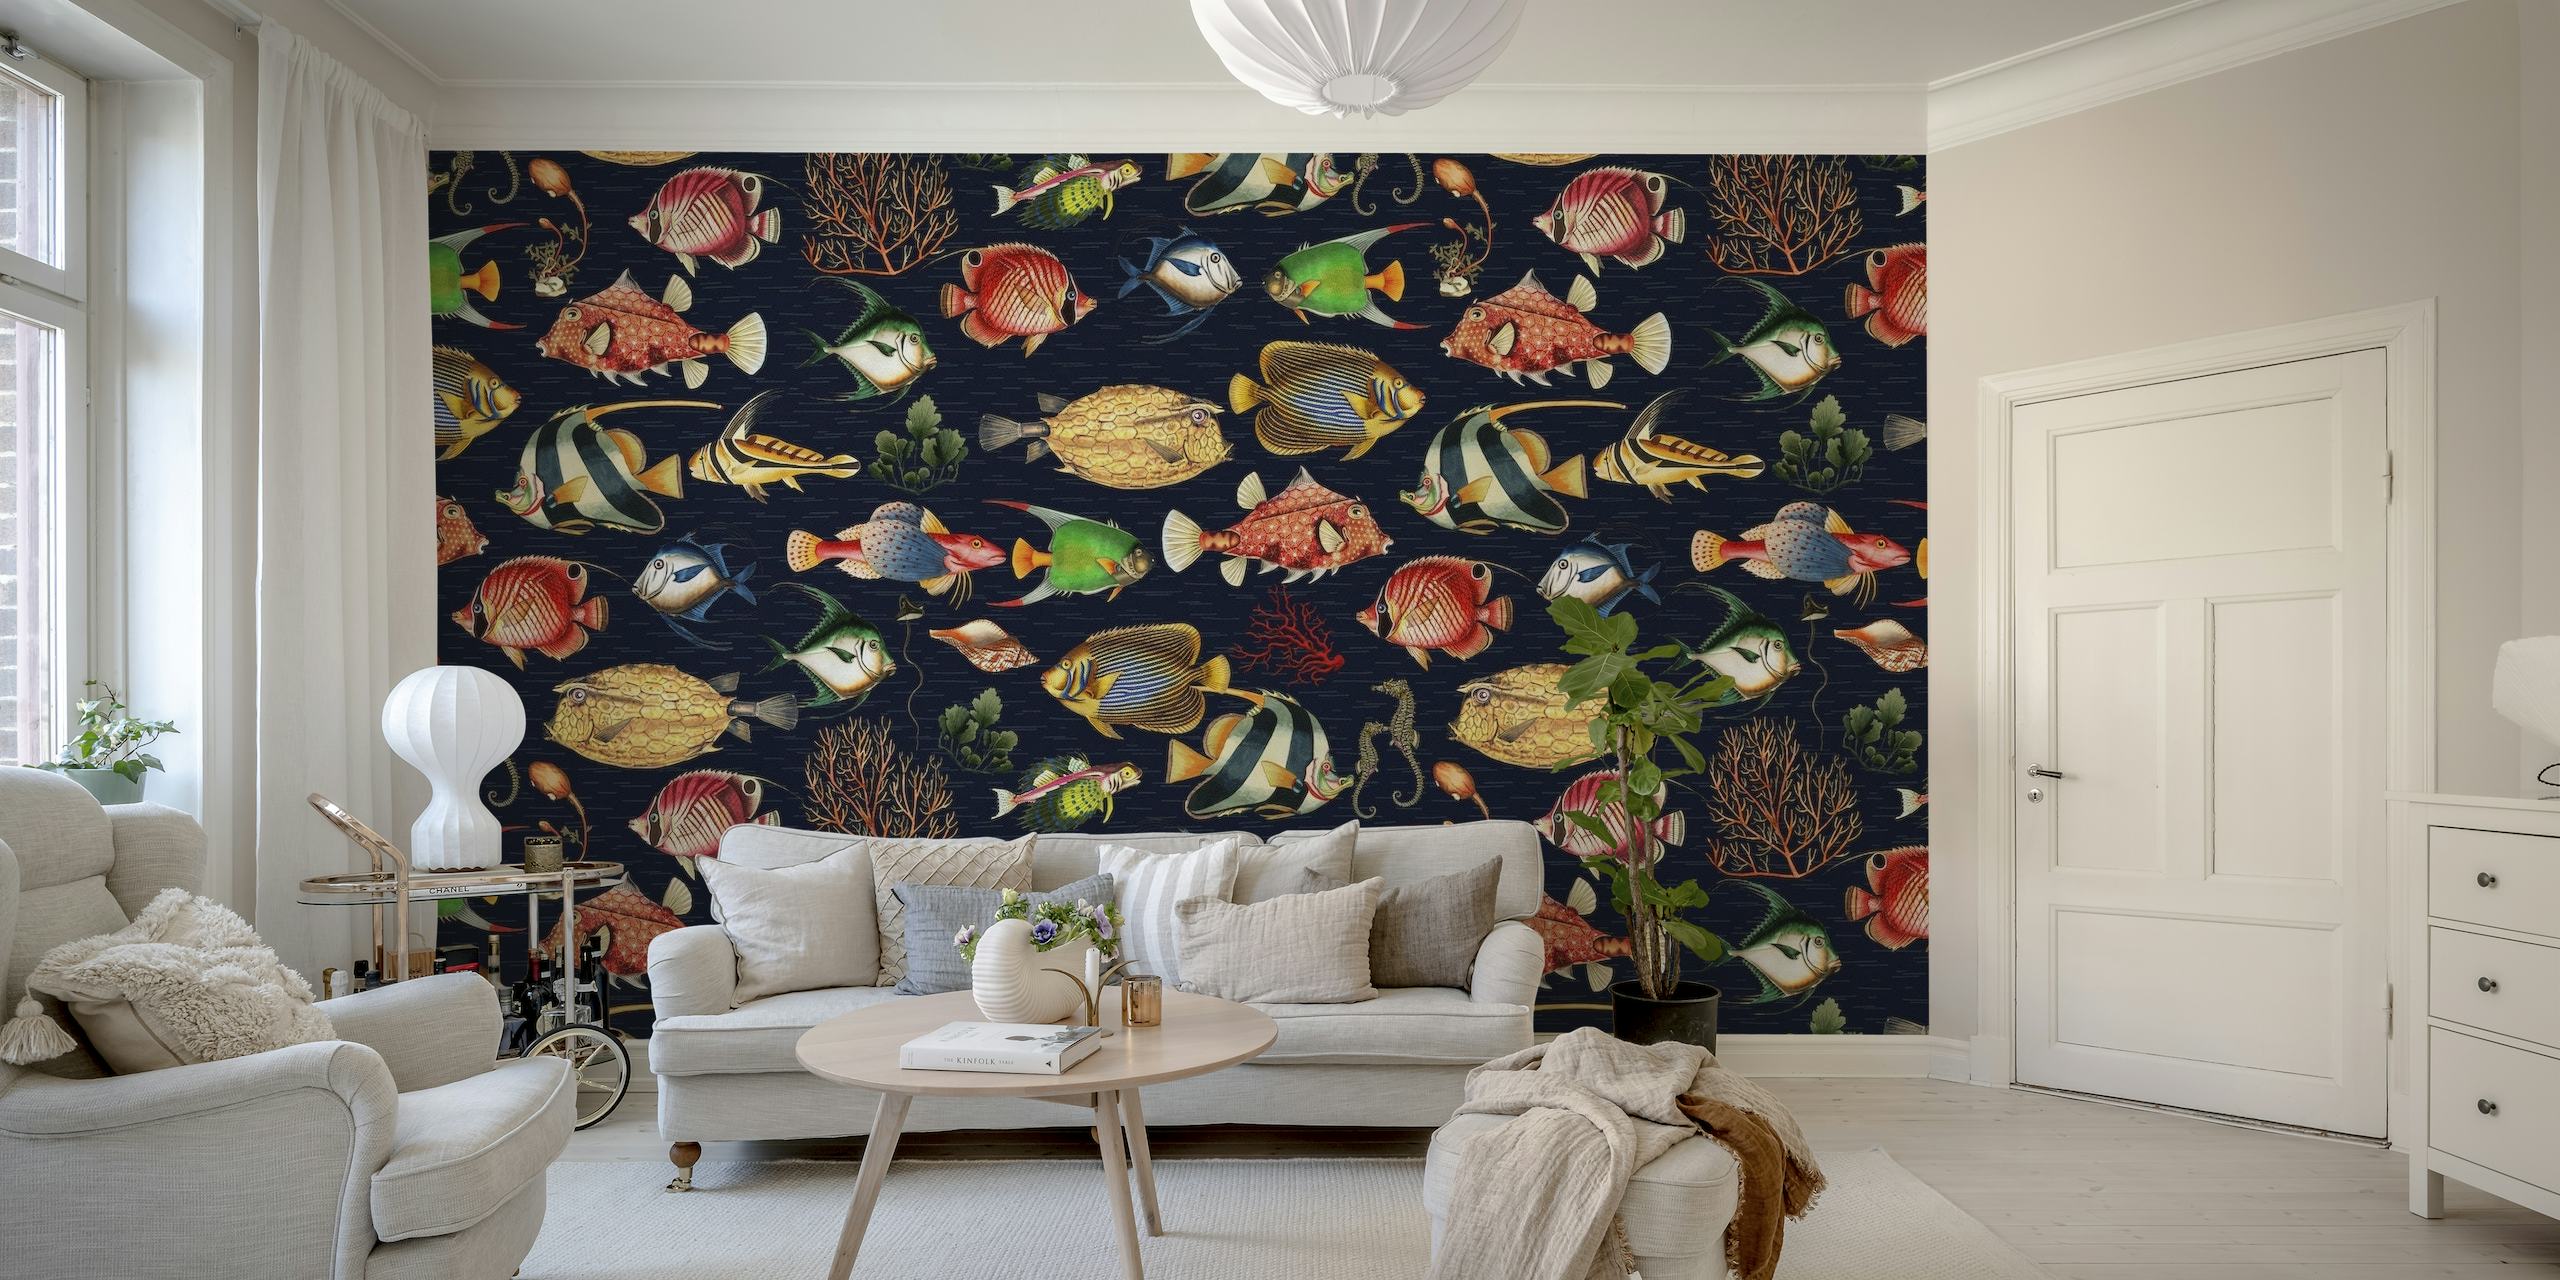 Mural de parede com tema oceânico e padrão de peixes tropicais em tons de azul marinho